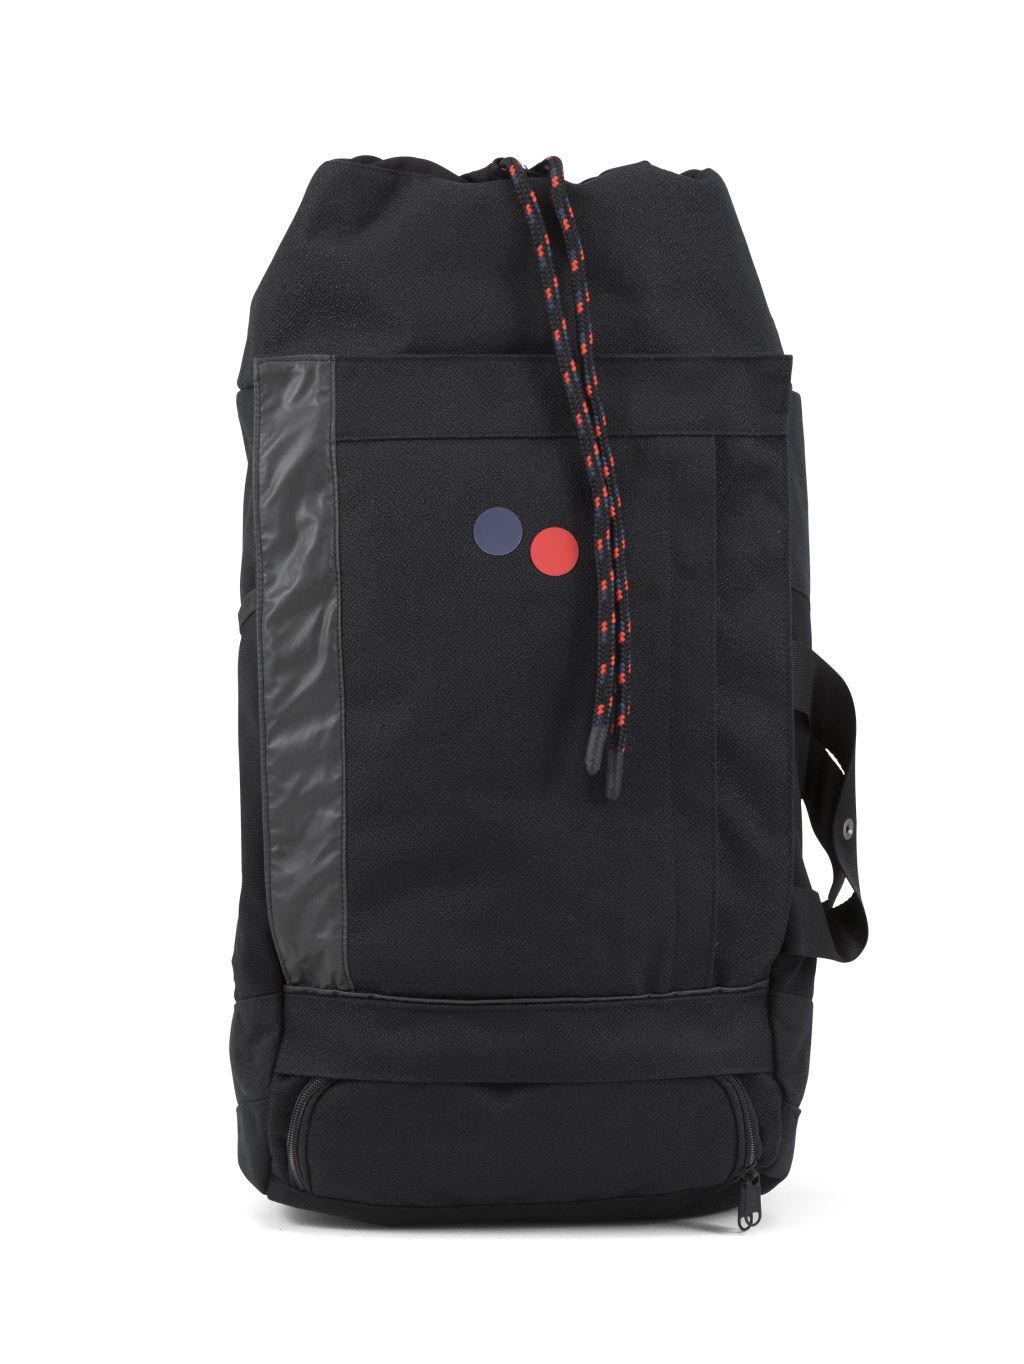 Blok Large Backpack Licorice Black